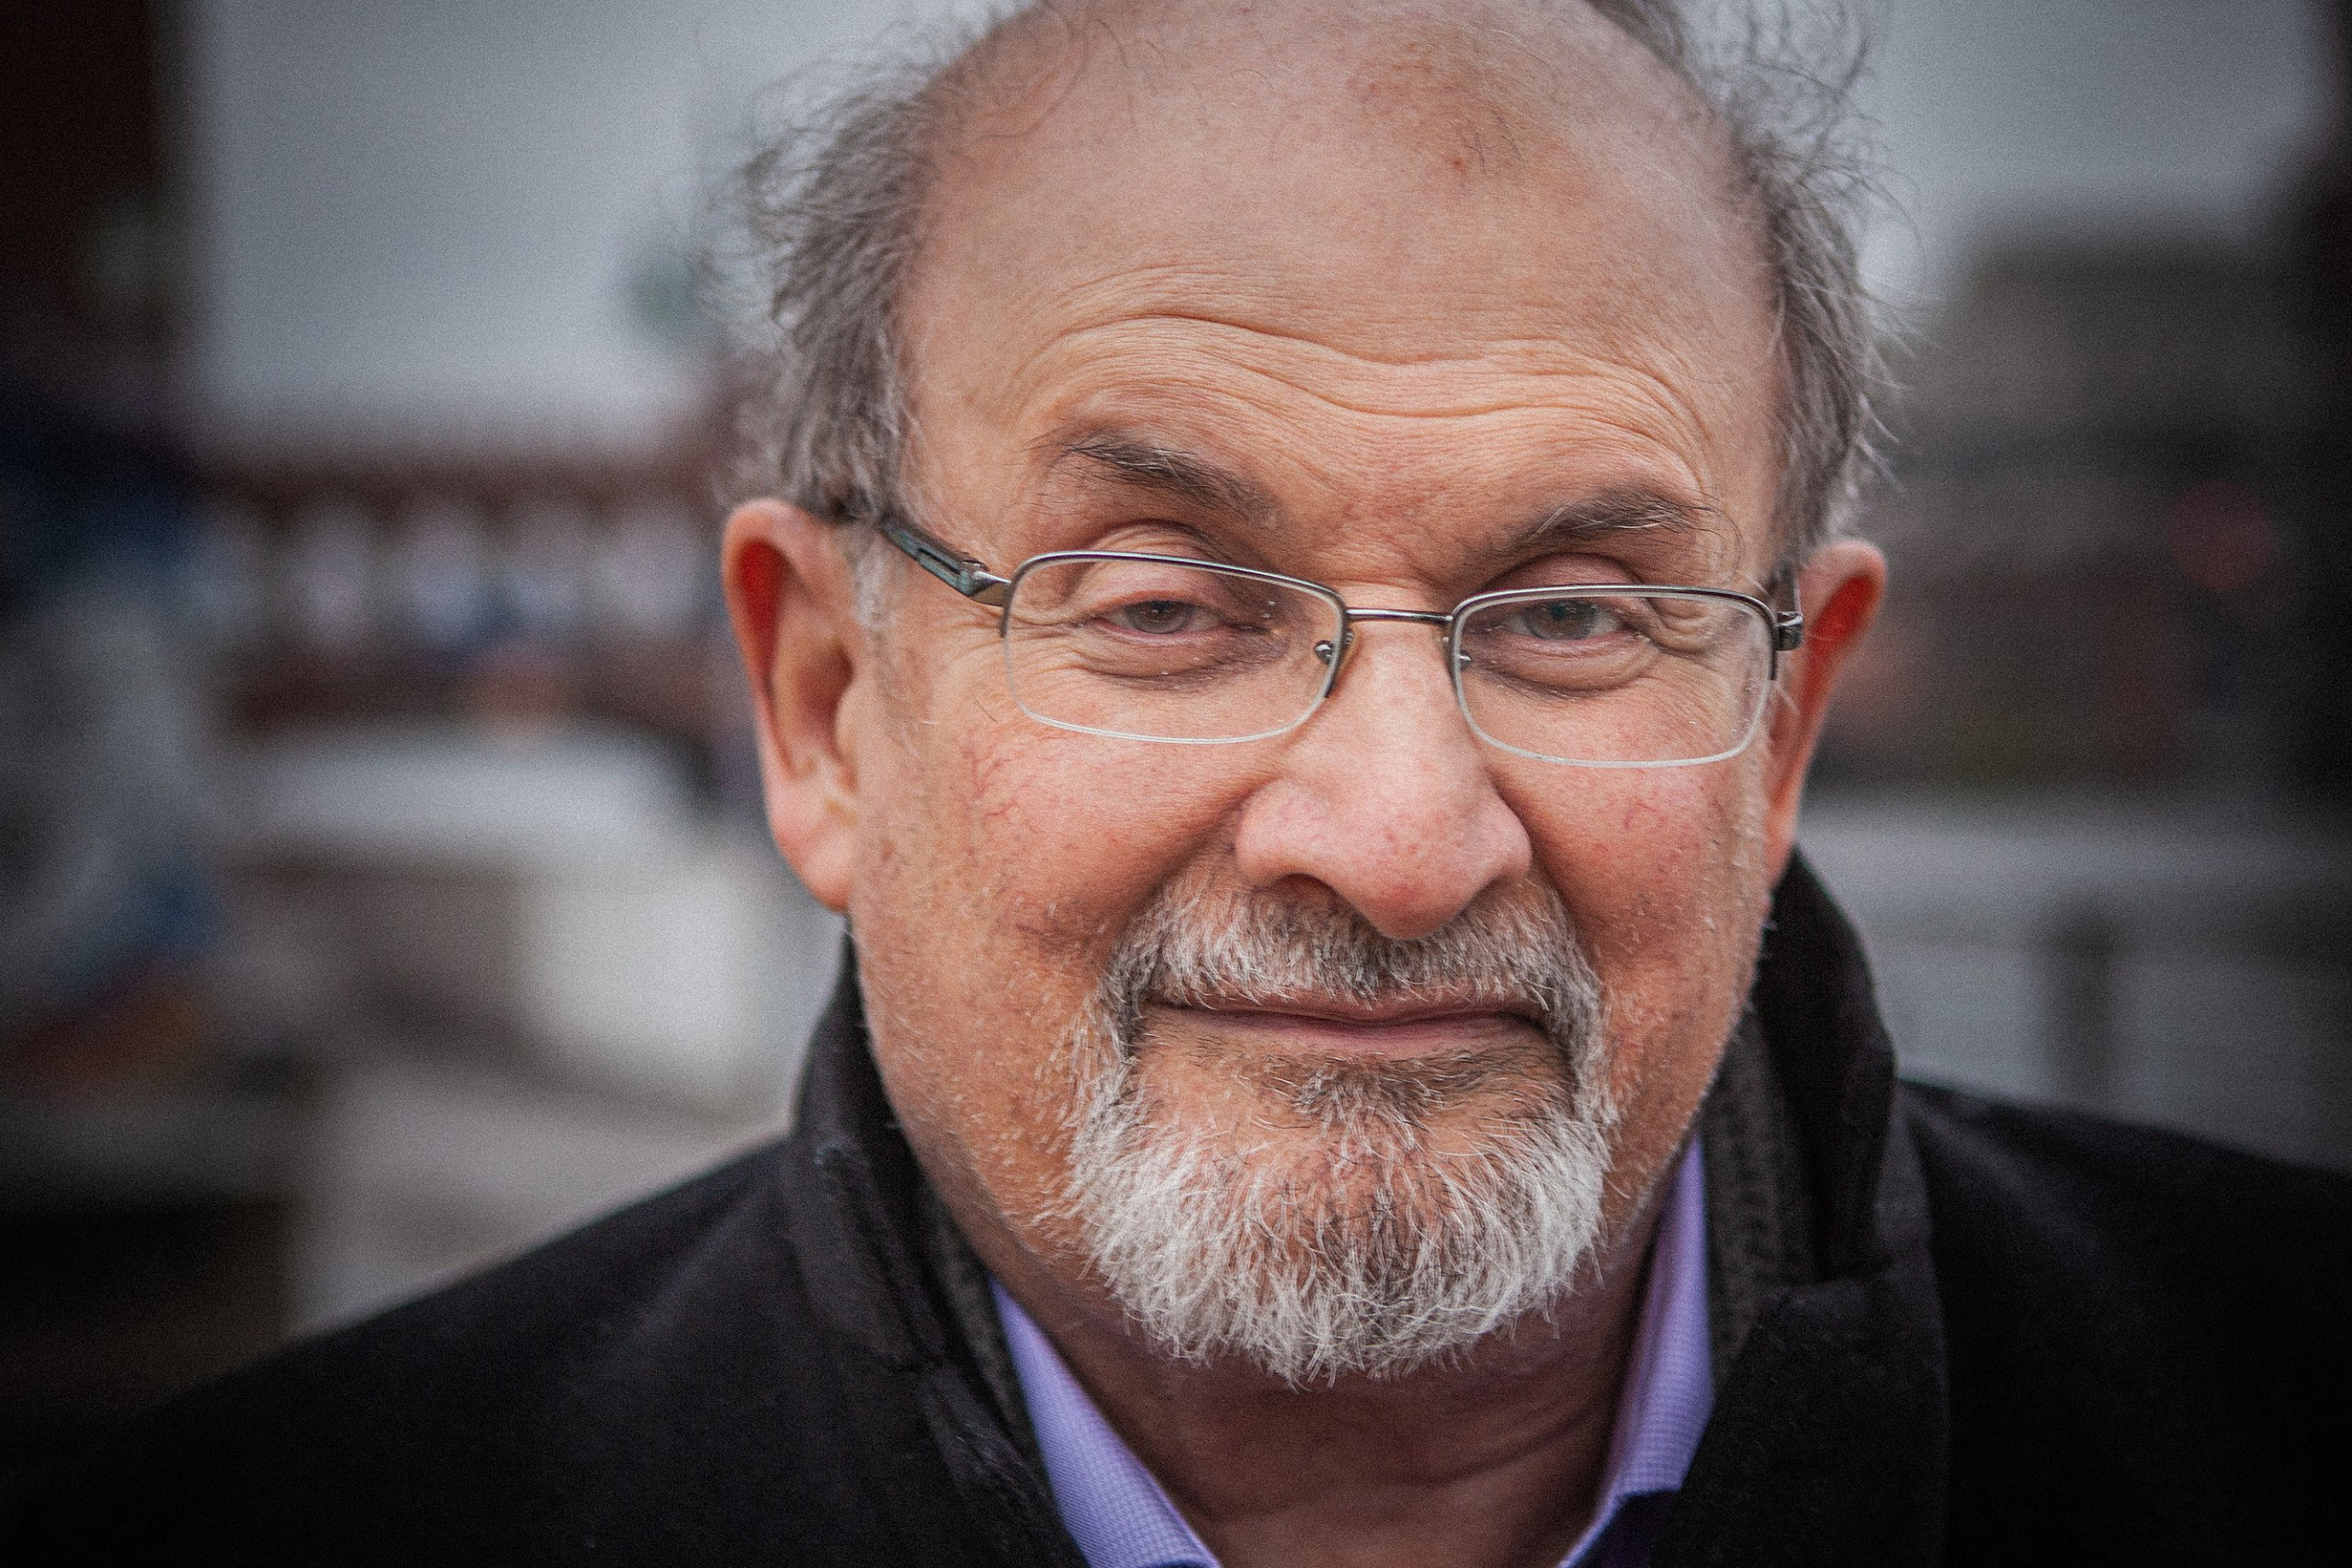 Za útokem na Salmana Rushdieho není jen fatva, ale vyhrocený svět